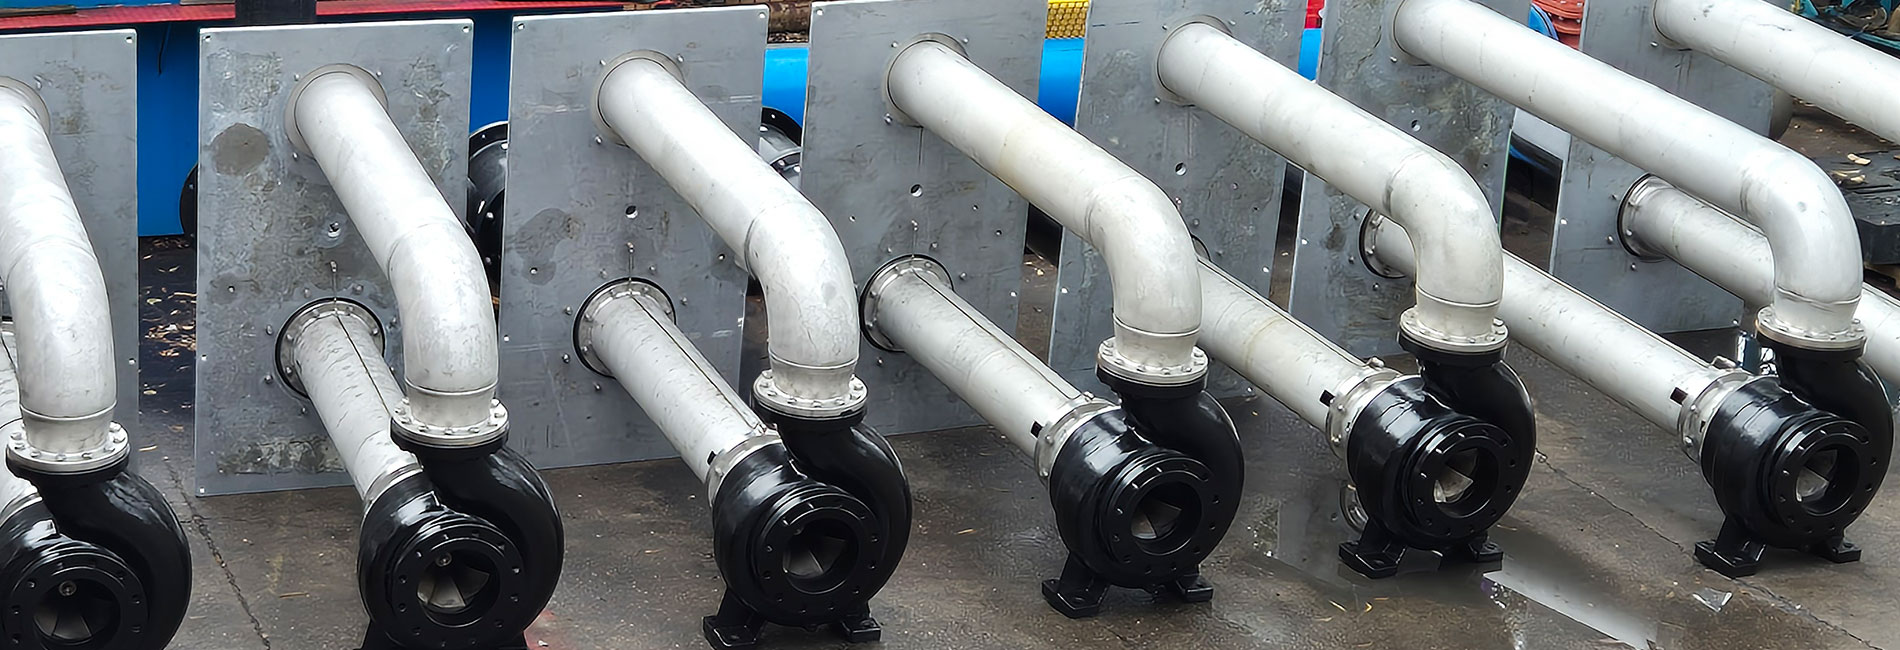 Custom-Built Sump Pumps For A Fuel Import Terminal